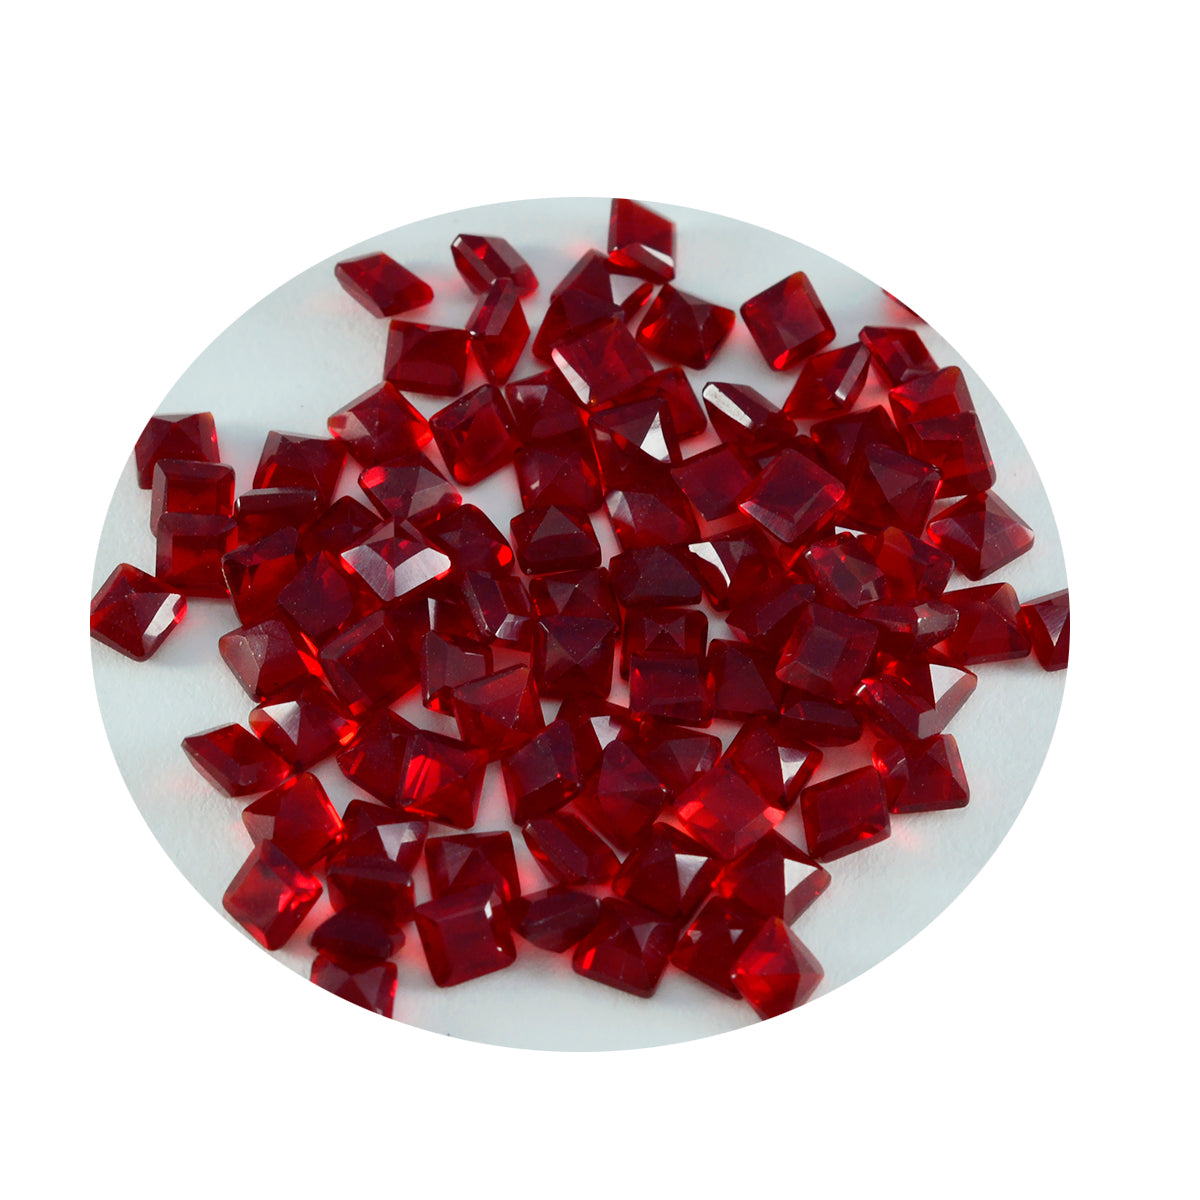 riyogems 1 шт. красный рубин cz граненый 4x4 мм квадратной формы прекрасное качество свободный драгоценный камень